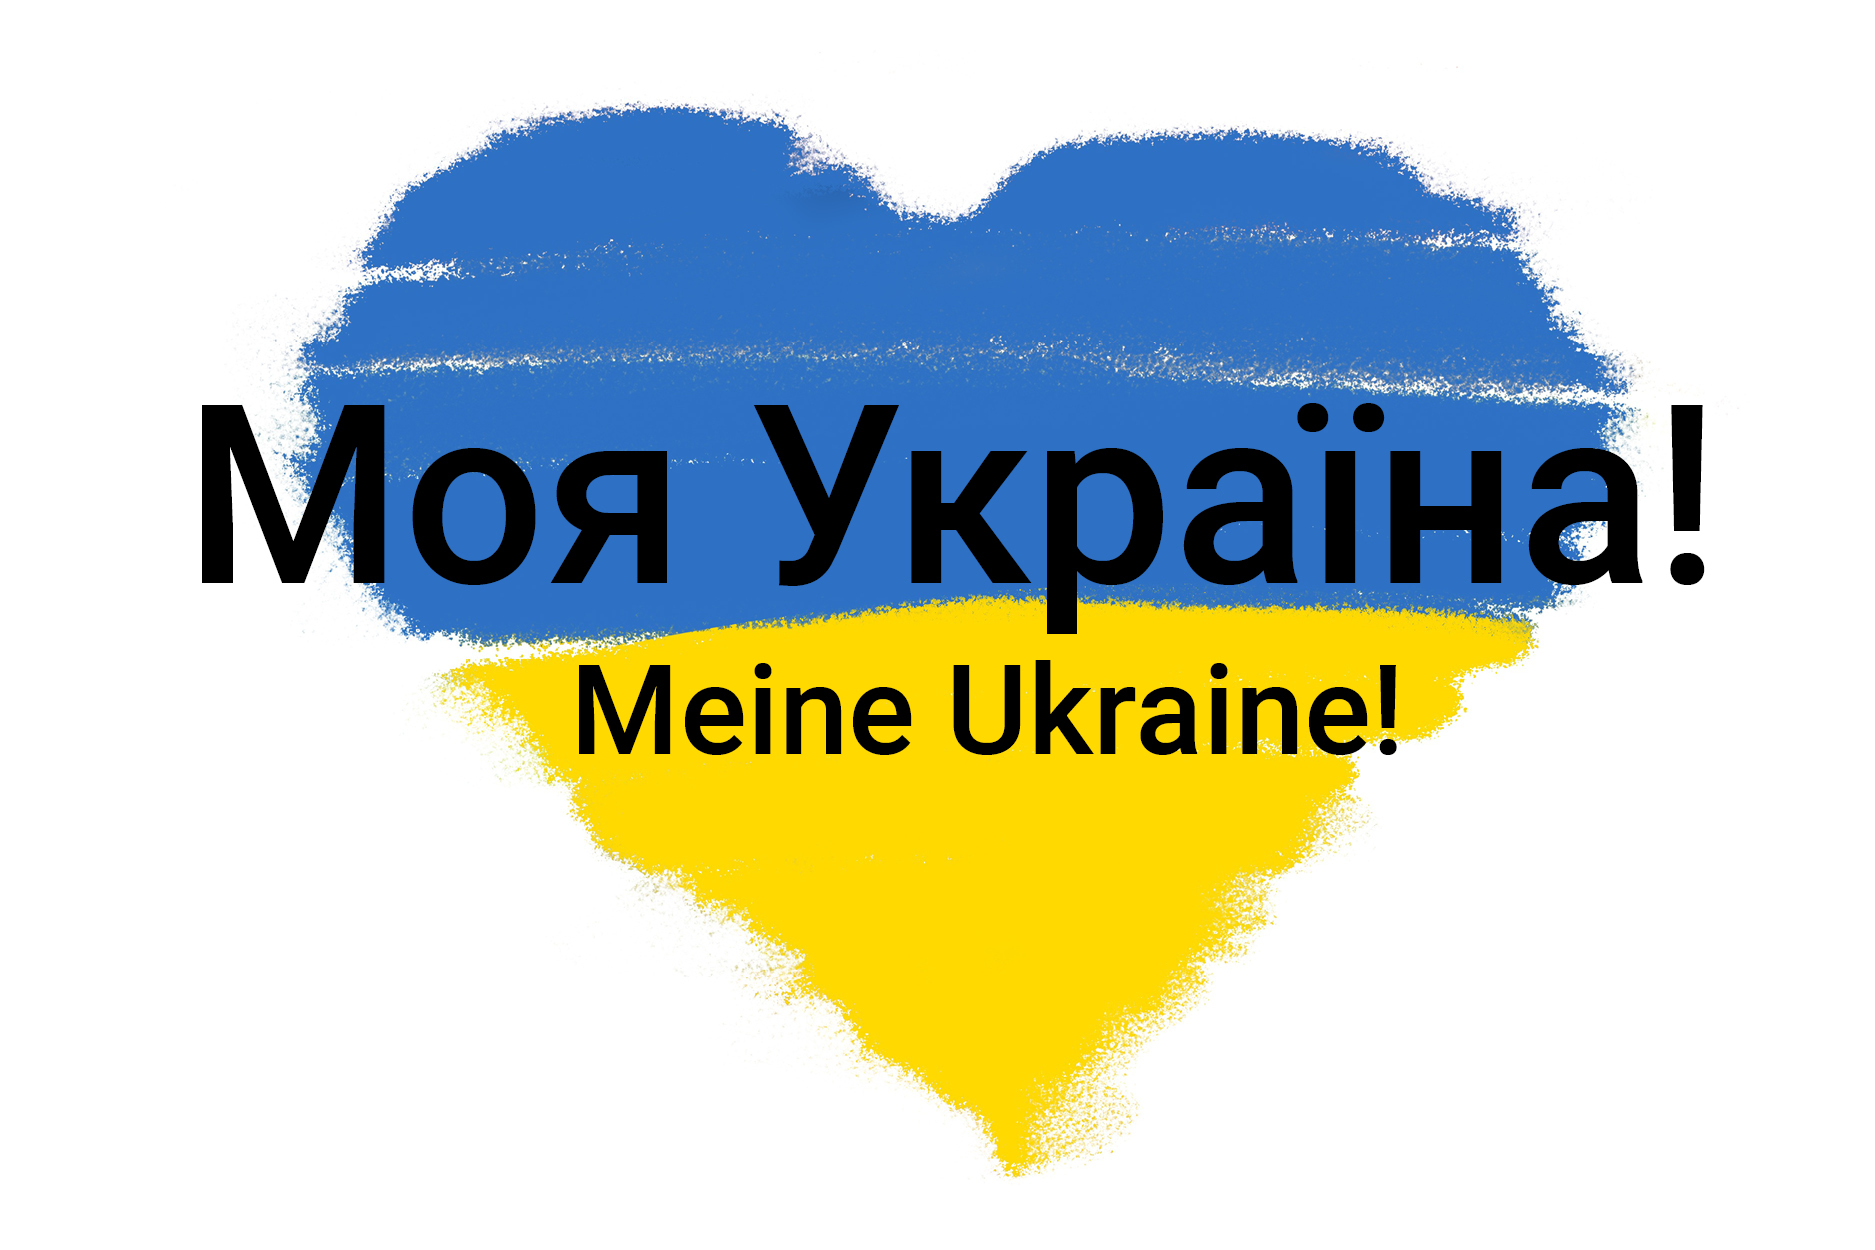 Meine Ukraine!